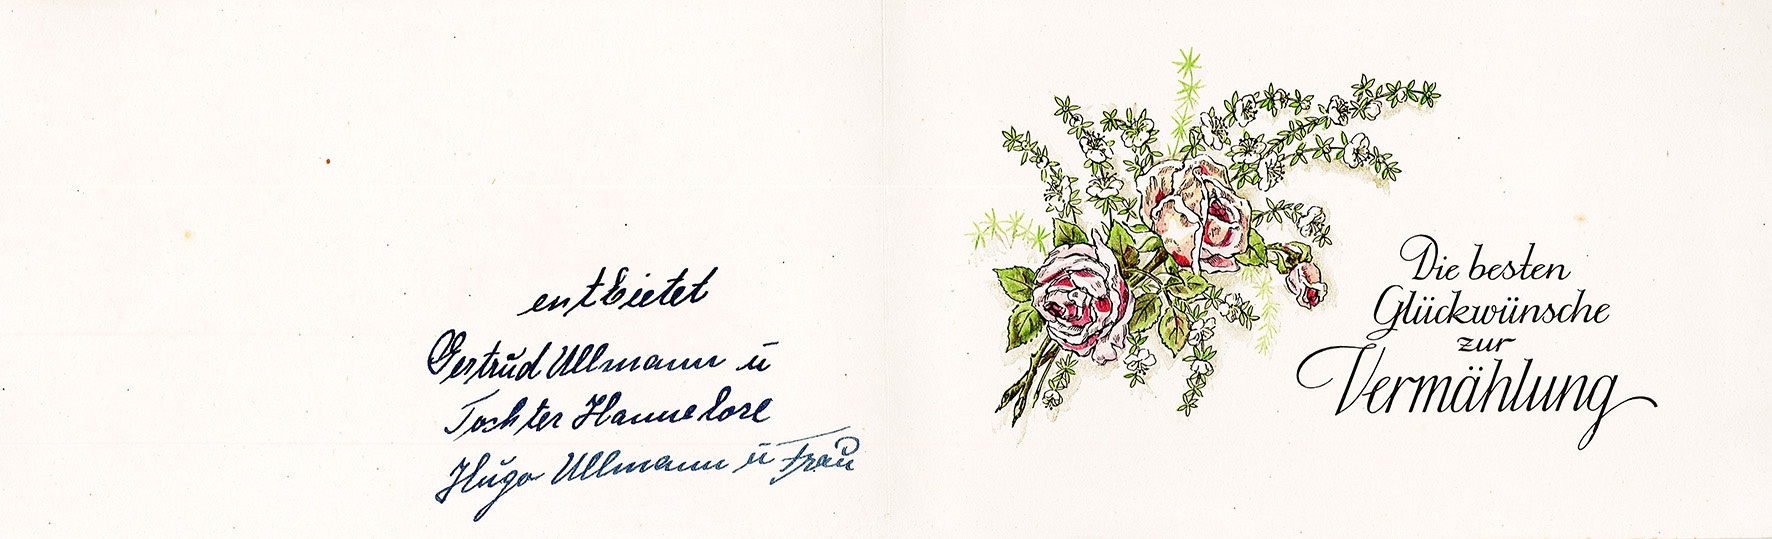 Glückwunschkarte zur Hochzeit an Ingeborg und Theodor Siebert von Familie Ullmann, 23. November 1948 (Museum Wolmirstedt RR-F)